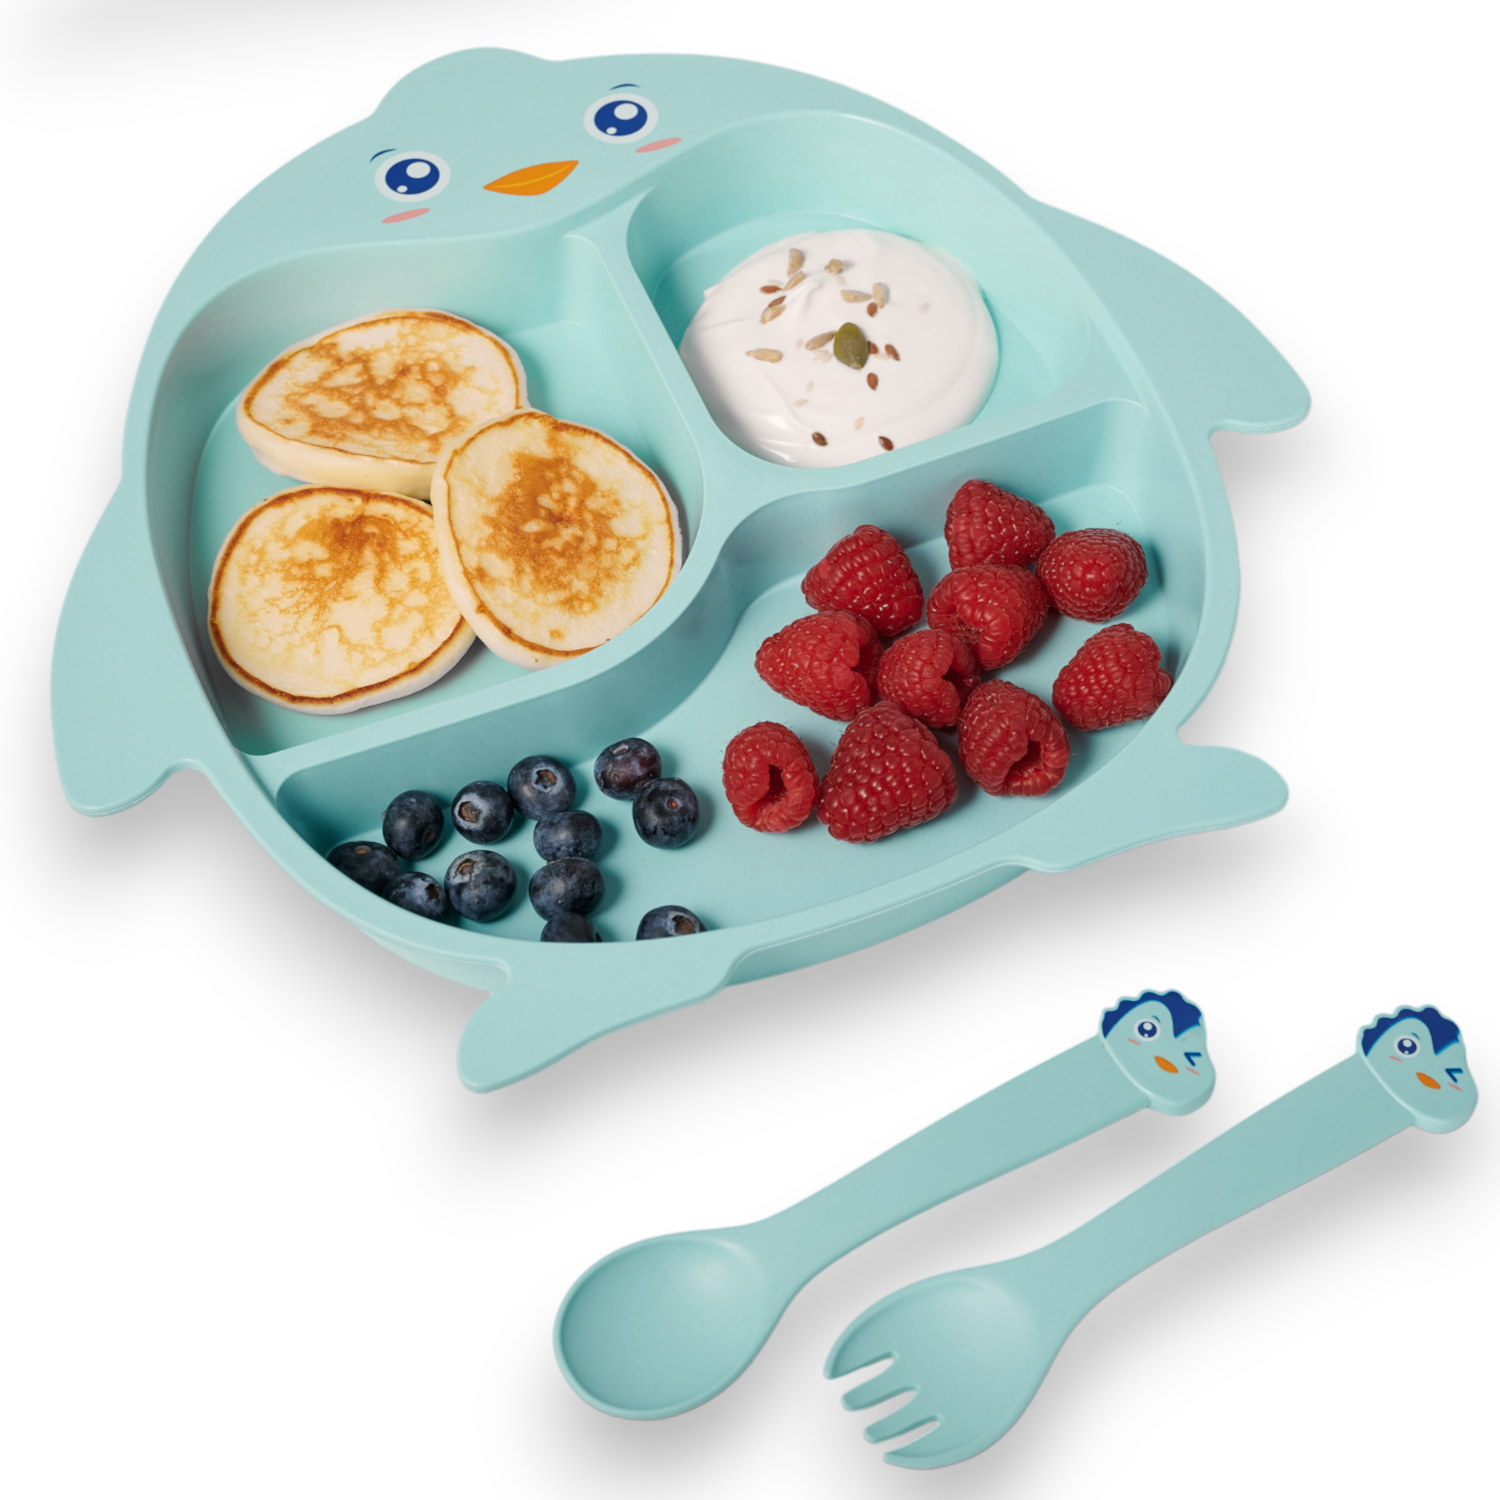 Детская посуда для кормления Добрый Филин Пингвинёнок тарелка, ложка, вилка, палочки кольчугинский мельхиор вилка детская посеребренная с эмалью маша футляр